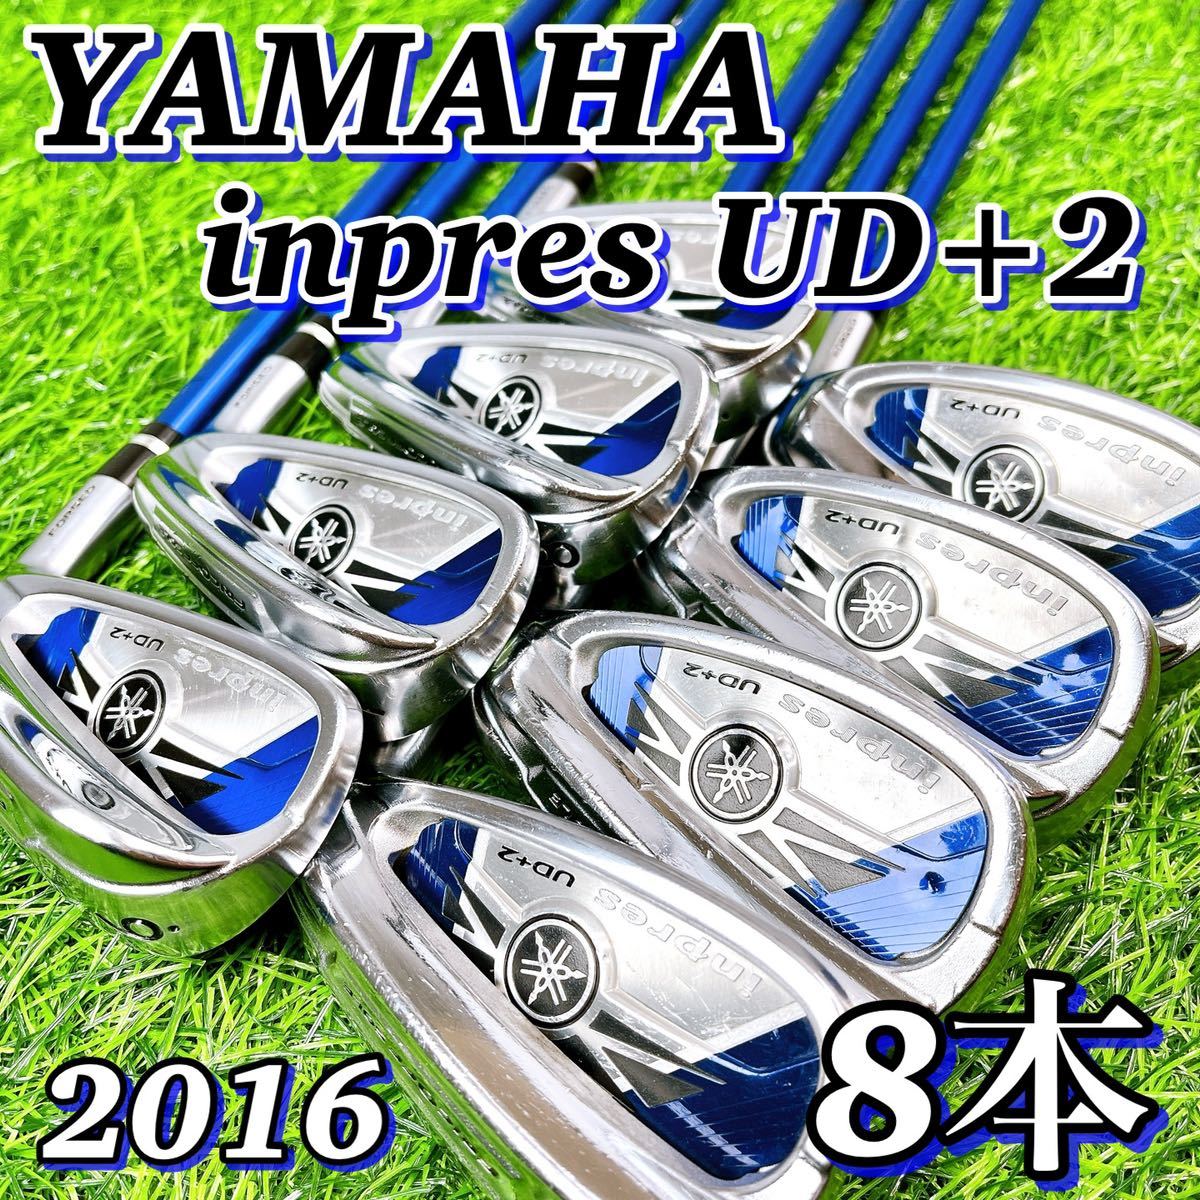 【ぶっ飛び最高峰】 ヤマハ インプレス UD+2 8本 メンズアイアン セット　+2番手の飛び　YAMAHA inpres UD+2 ゴルフクラブ R_画像1